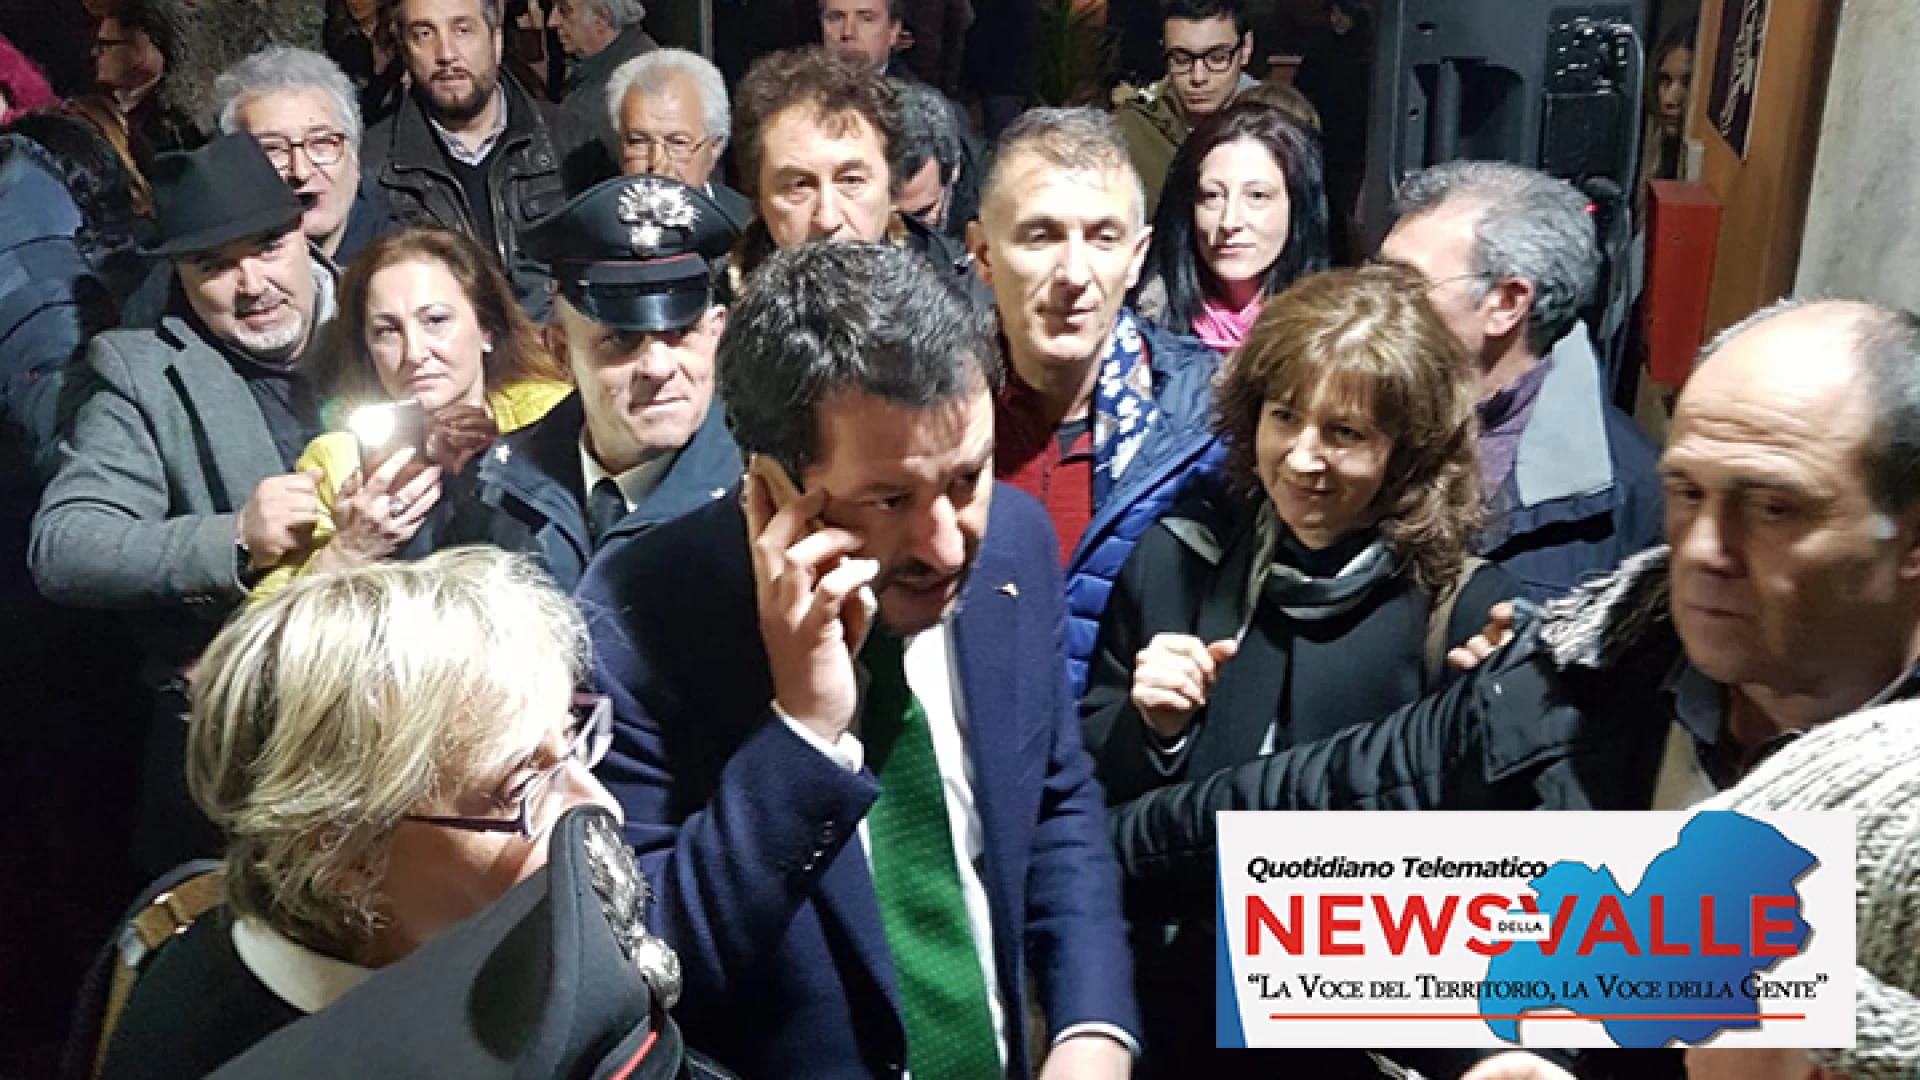 Salvini a Venafro inaugura la sede politica della Lega. “Dopo le promesse agli italiani è l’ora di passare ai fatti”.